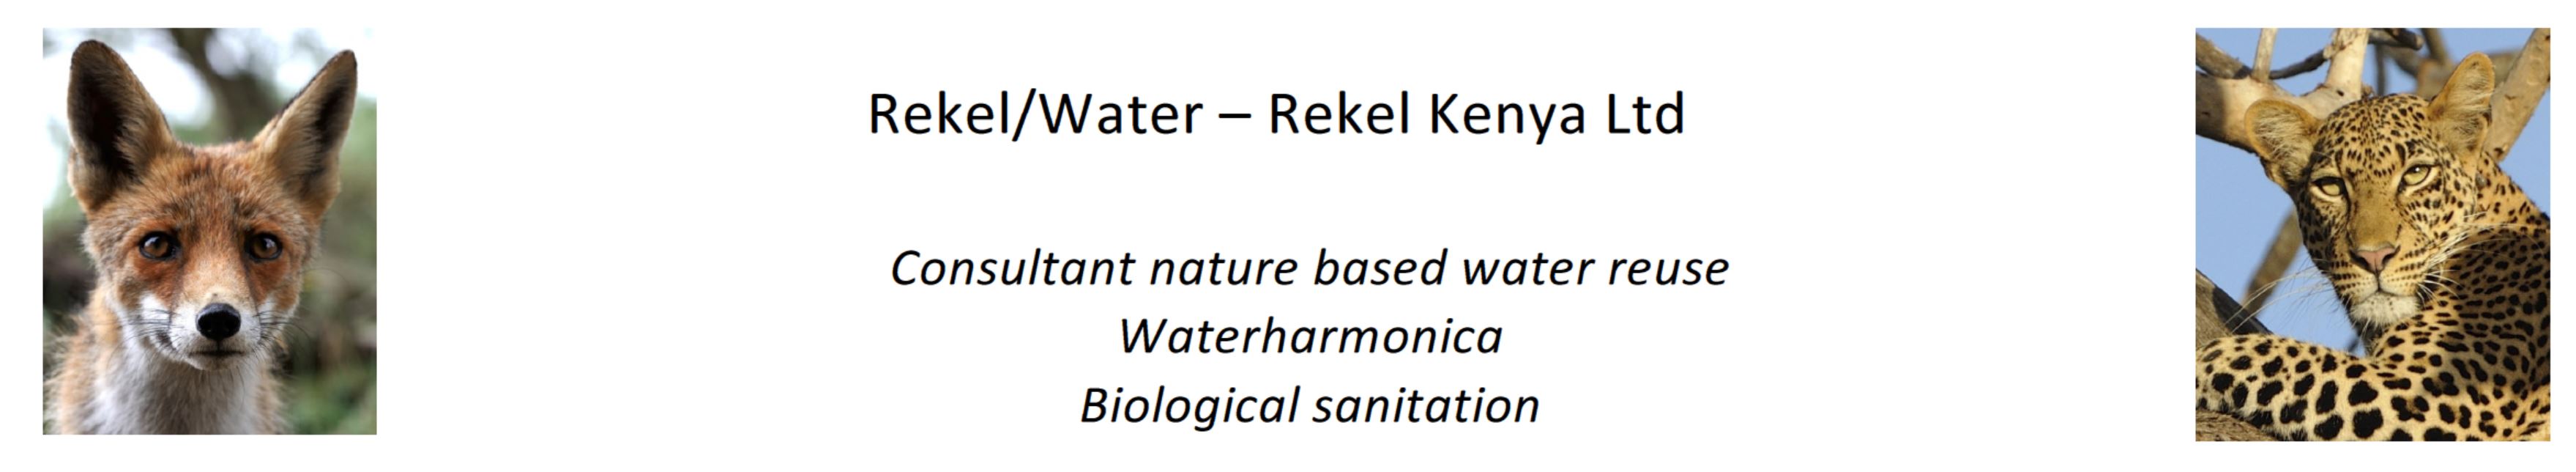 Rekel/water - Rekel Kenya Ltd